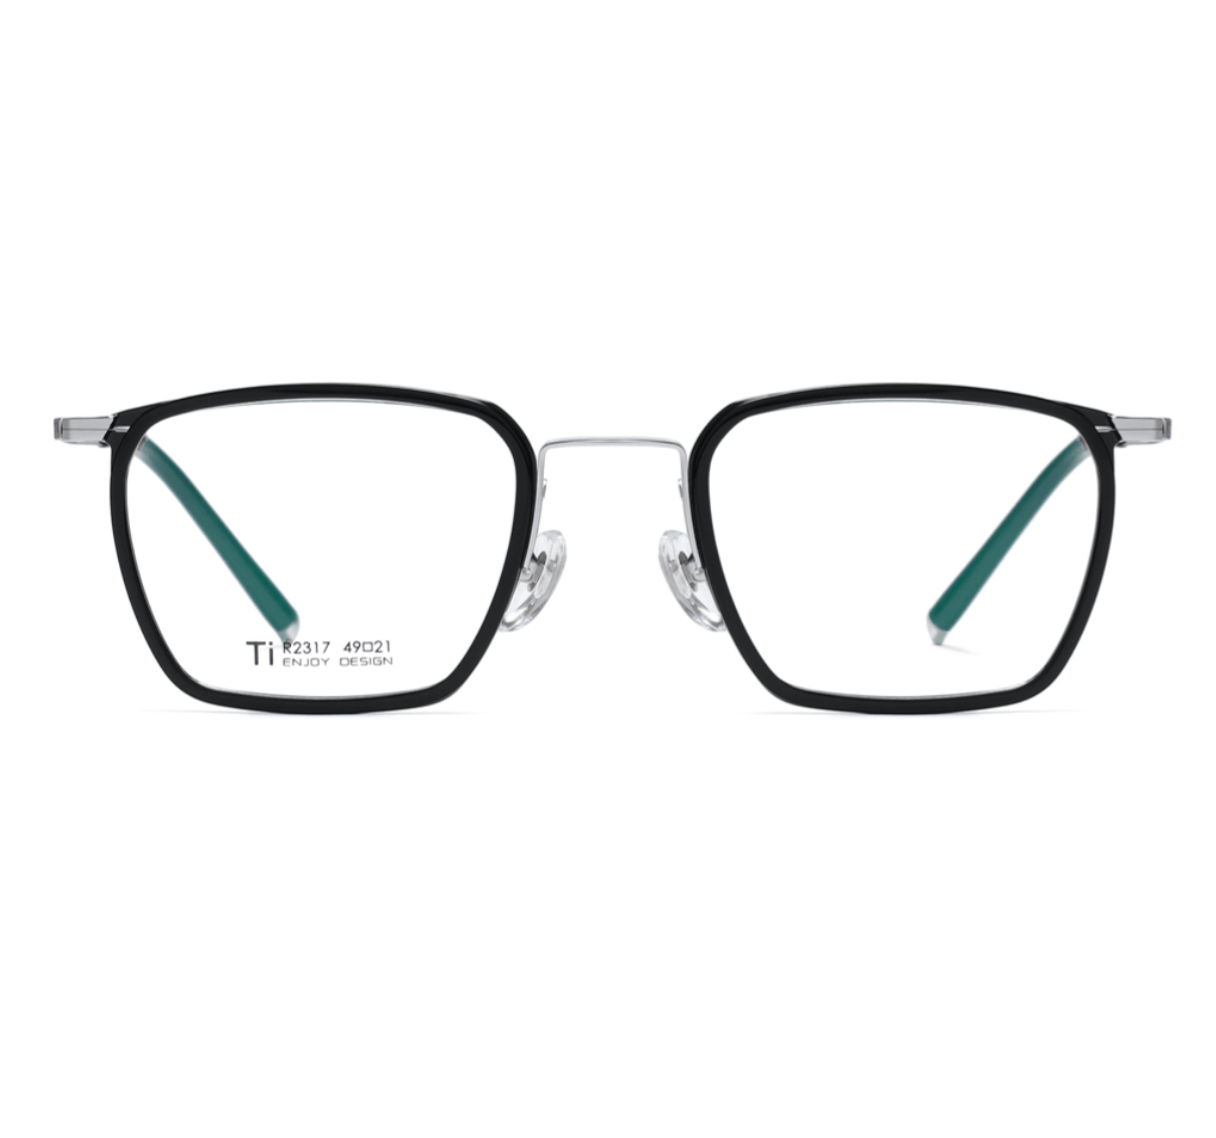 Handmade Acetate Glasses Frames, custom spectacle frames, glasses frames China, eyeglass suppliers